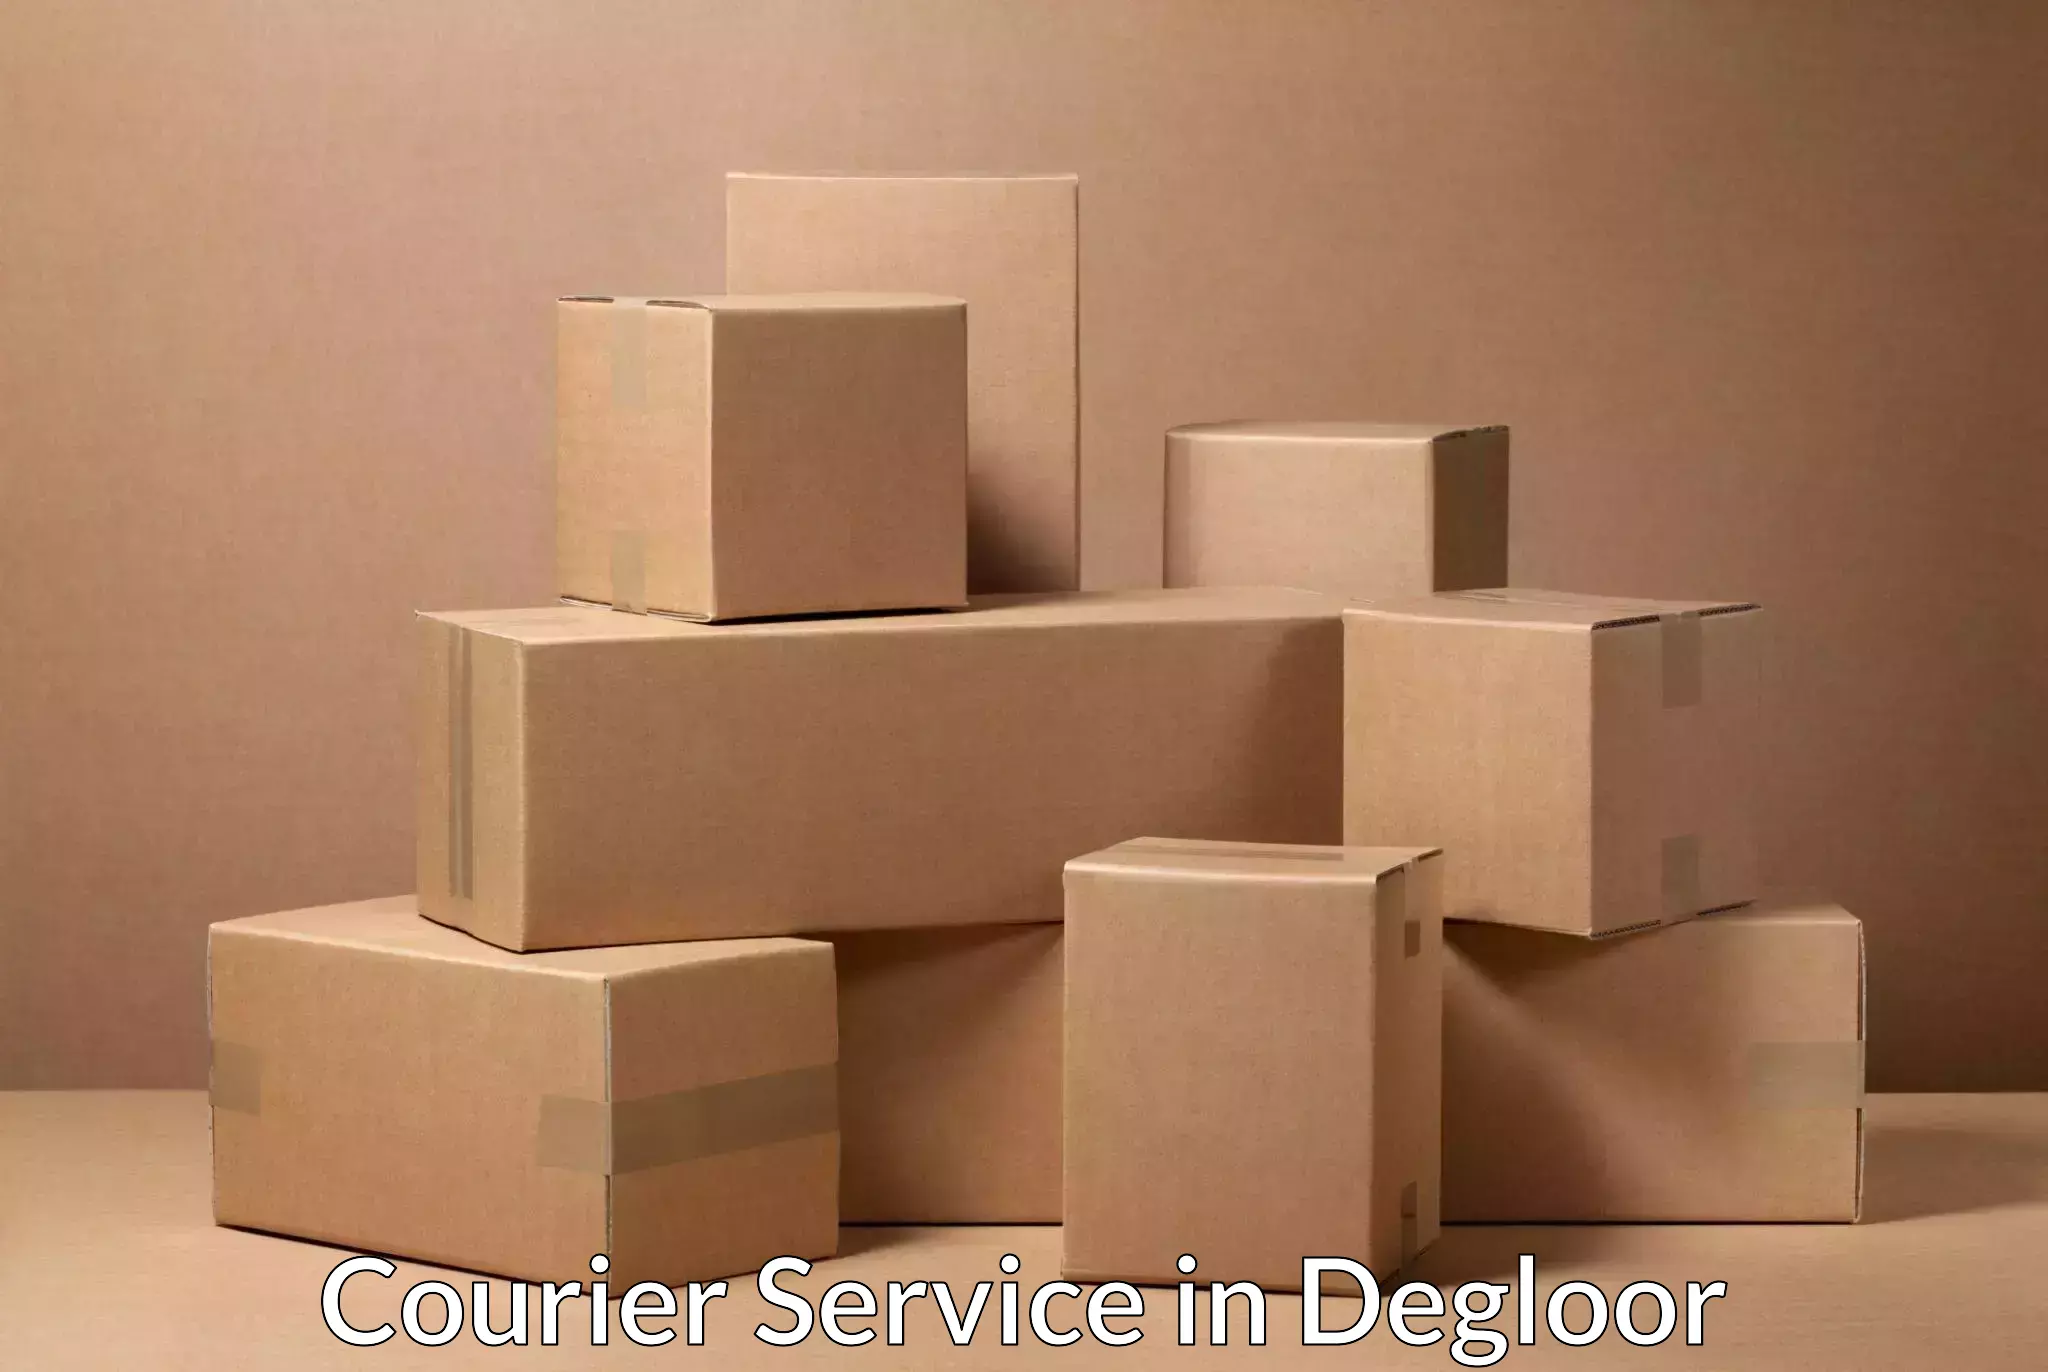 User-friendly courier app in Degloor